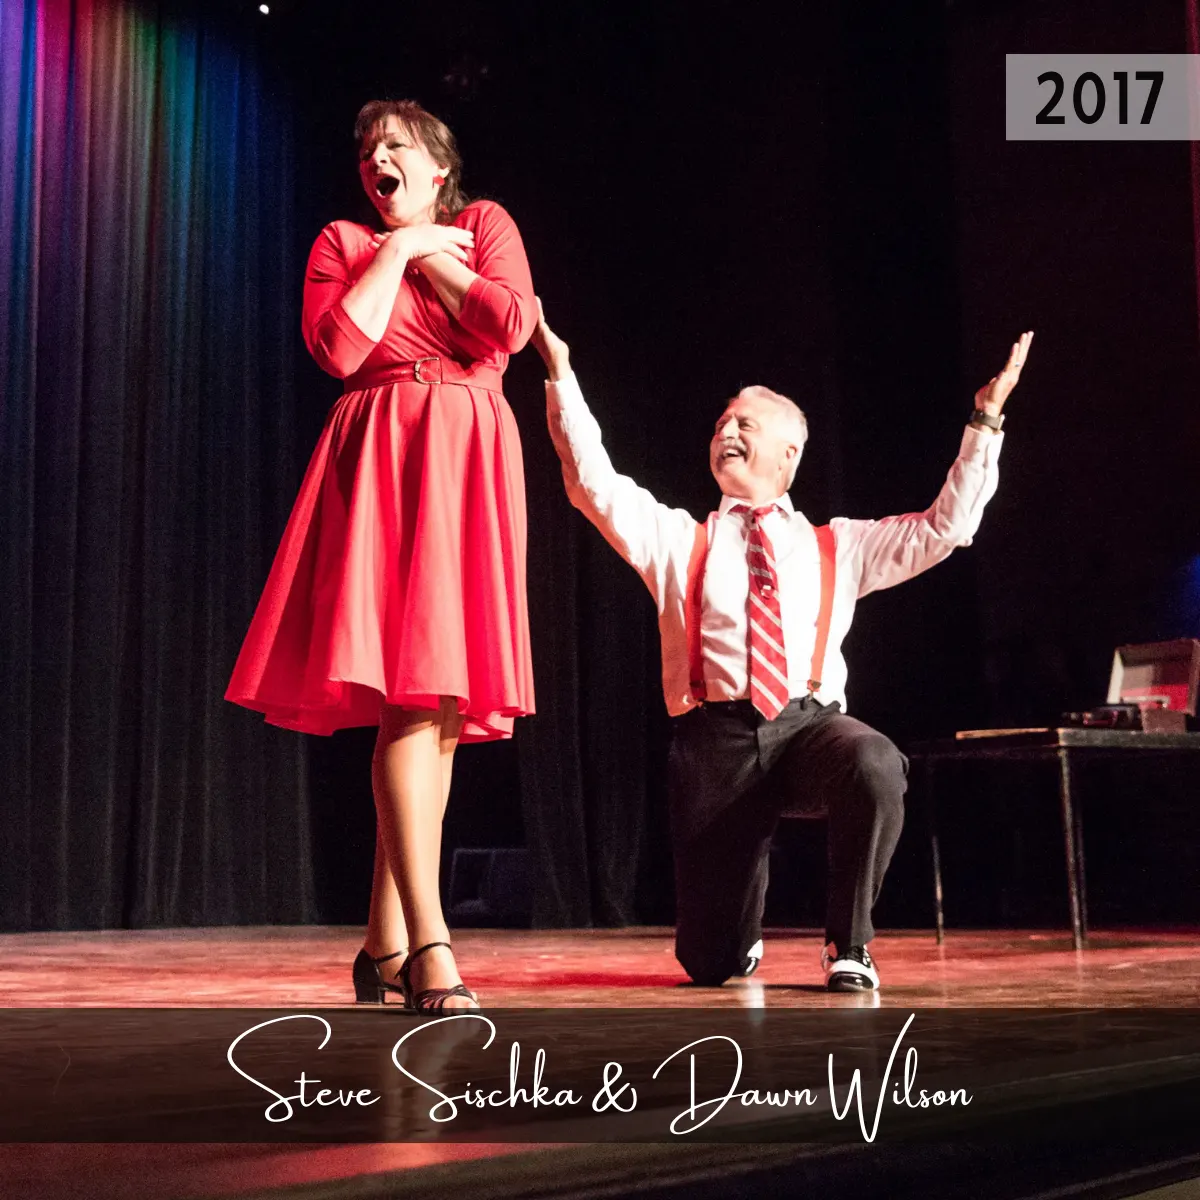 2017 Hall of Fame - Steve Sichka and Dawn Wilson